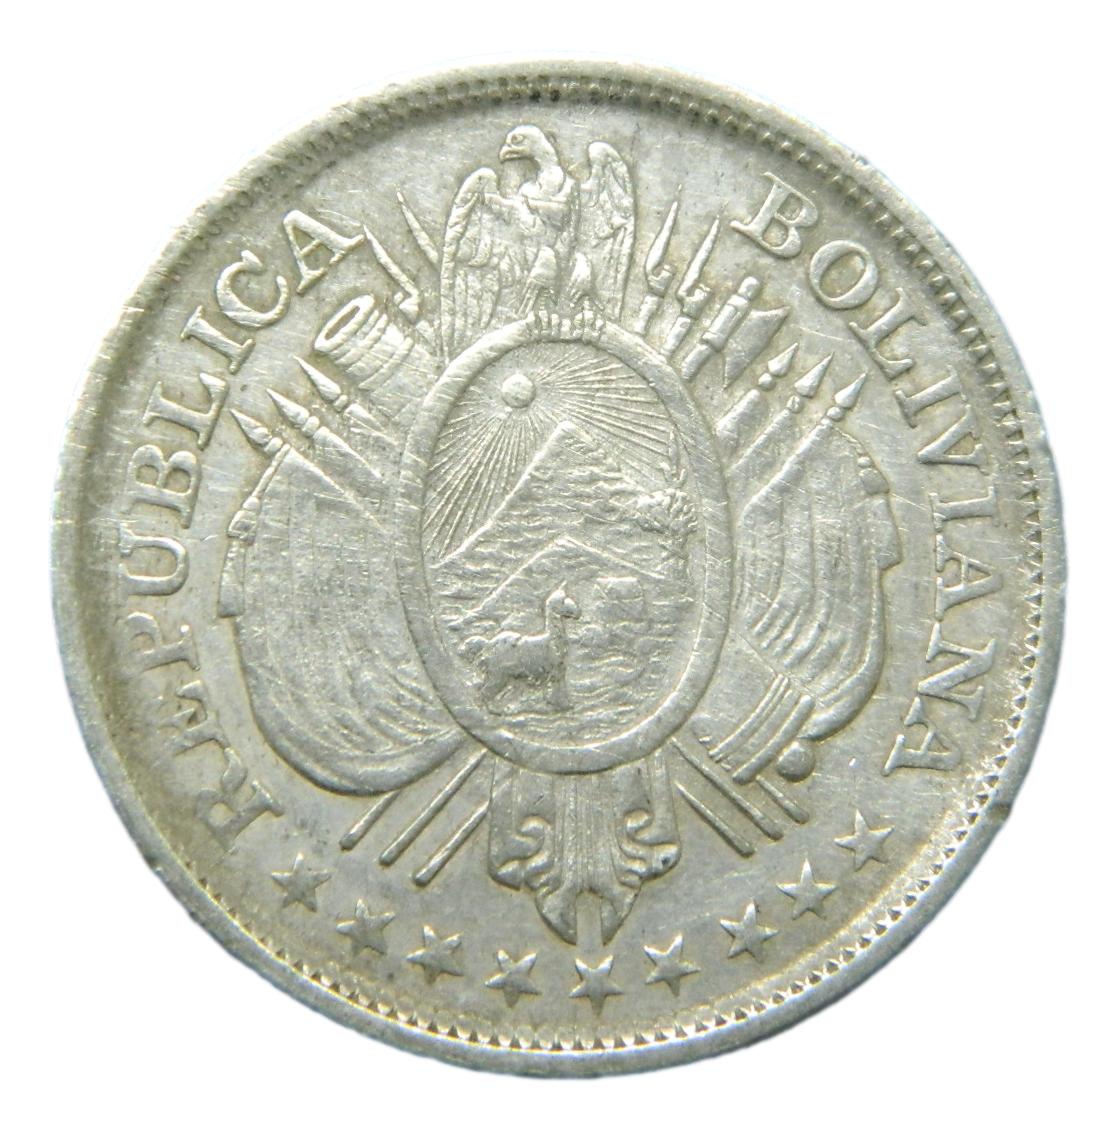 1892 CB - BOLIVIA - 50 CENTAVOS - POTOSI